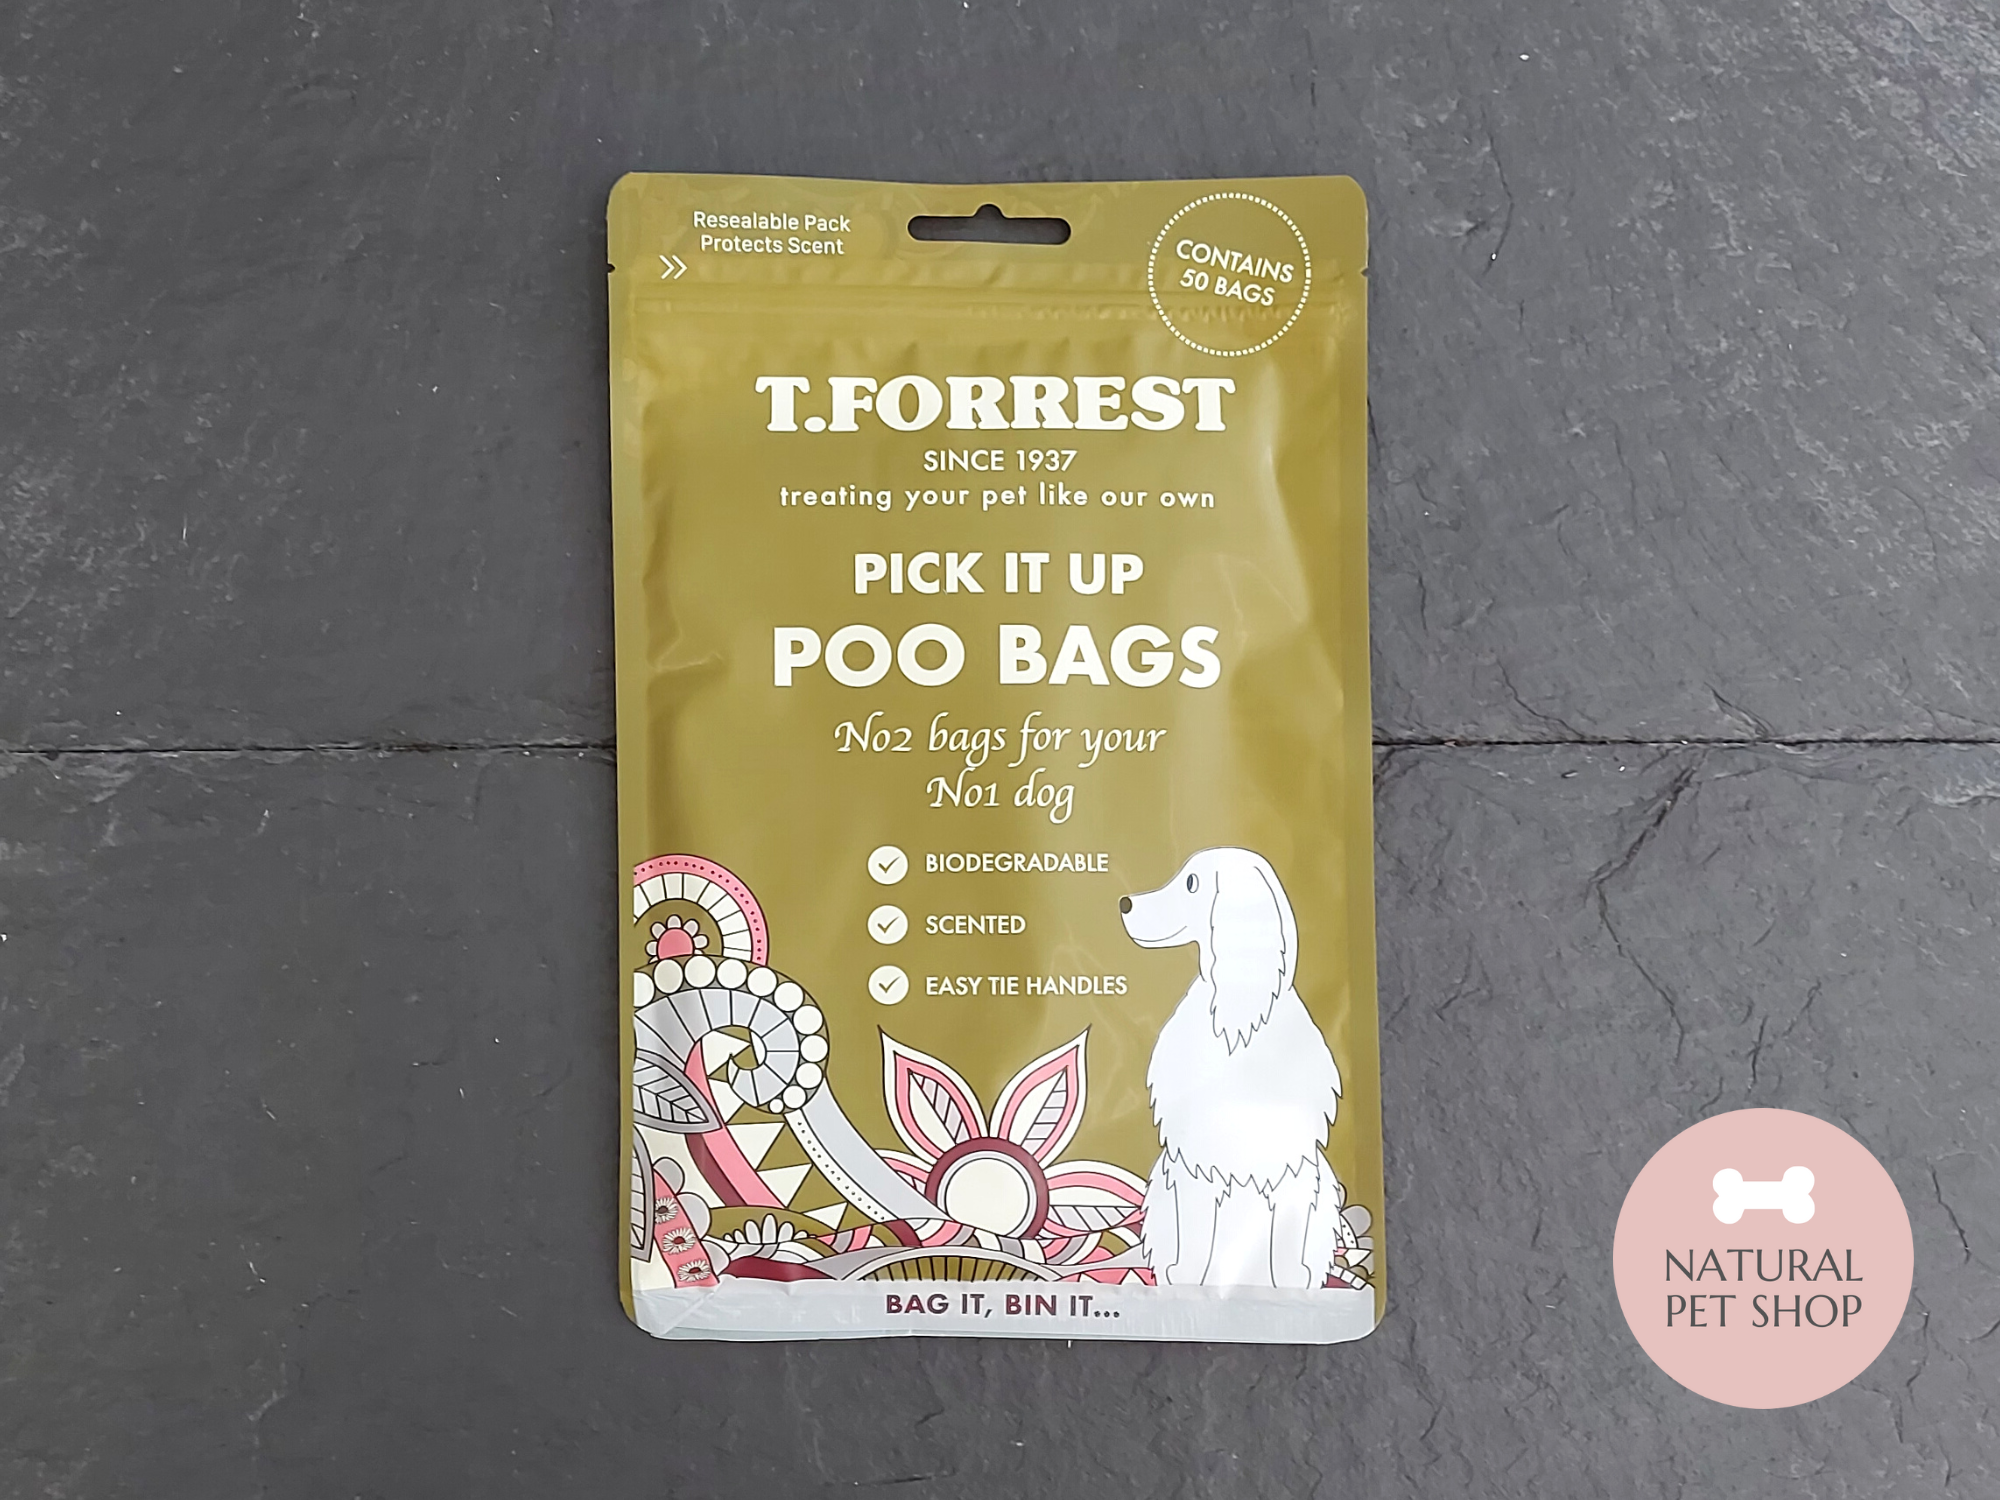 Bio-degradable Poo Bags